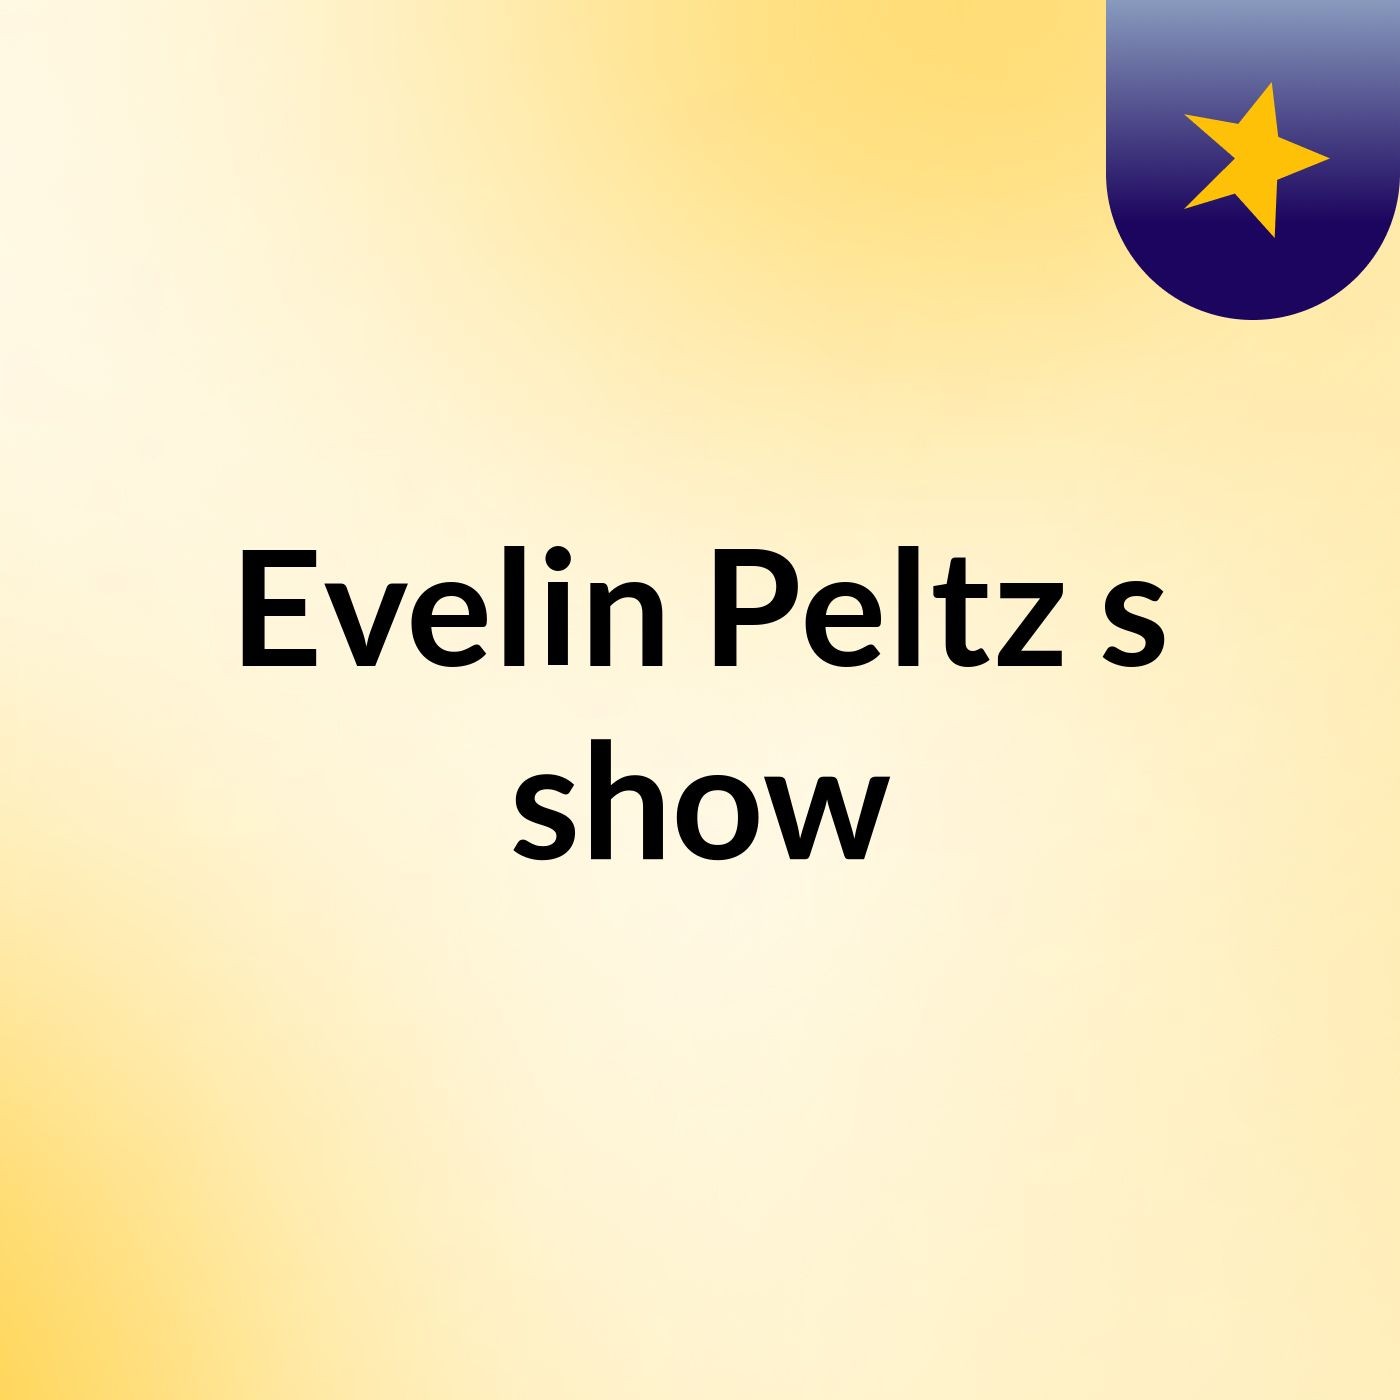 Evelin Peltz's show